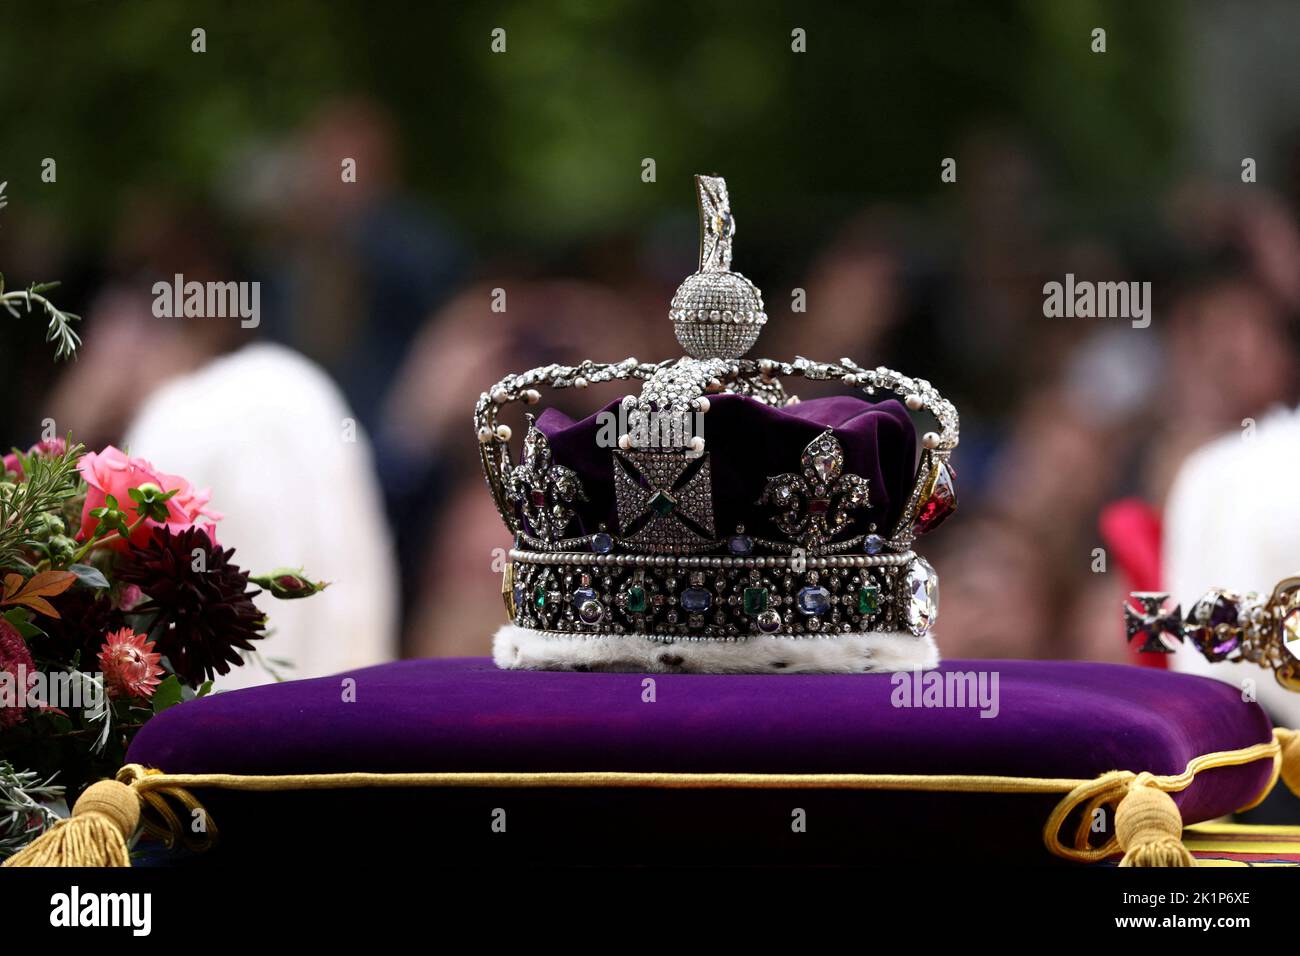 La corona imperiale di stato è vista sulla bara della regina Elisabetta britannica il giorno del suo funerale e della sua sepoltura di stato, a Londra, in Gran Bretagna, il 19 settembre 2022. REUTERS/Tom Nicholson Foto Stock